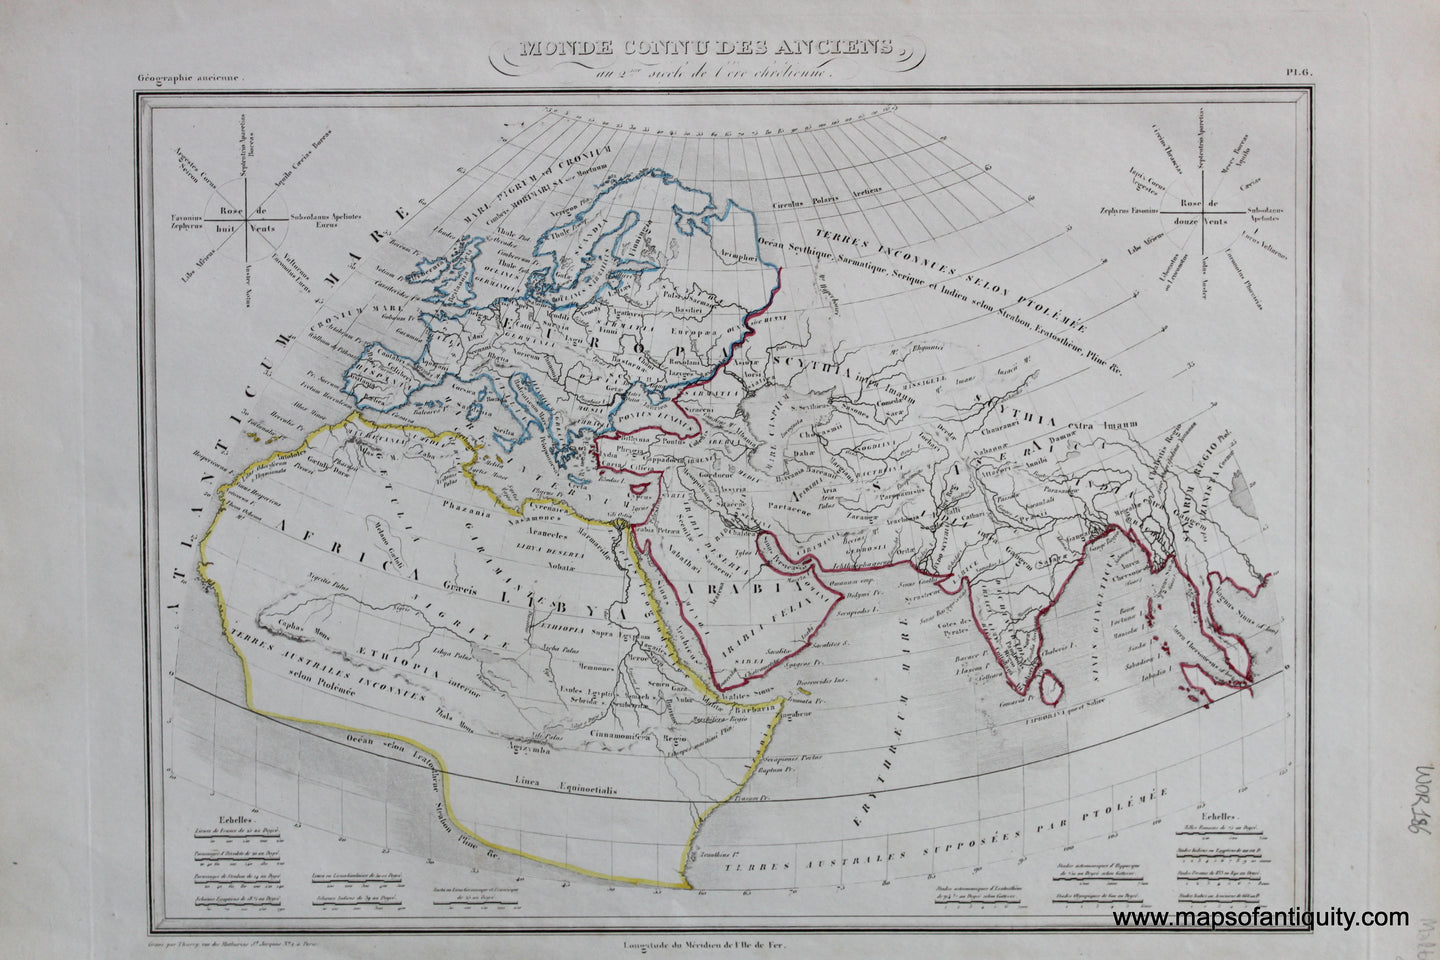 Antique-Hand-Colored-Map-Monde-connu-des-anciens-au-siecle-de-Ptolemee-World--1846-M.-Malte-Brun-Maps-Of-Antiquity